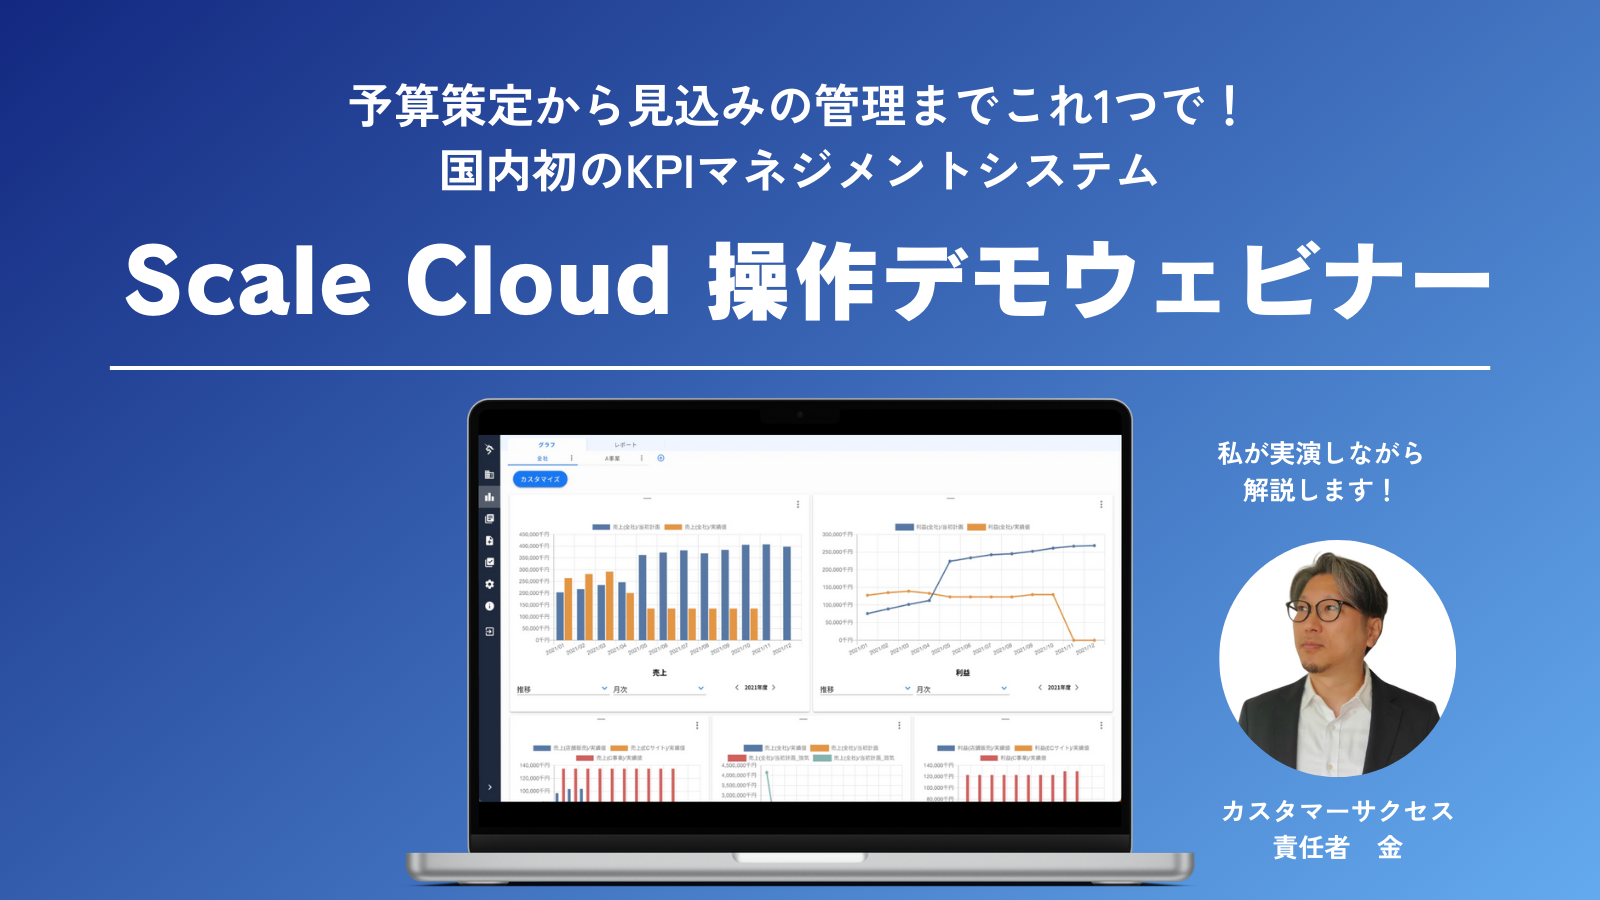 Scale Cloud 操作デモウェビナー